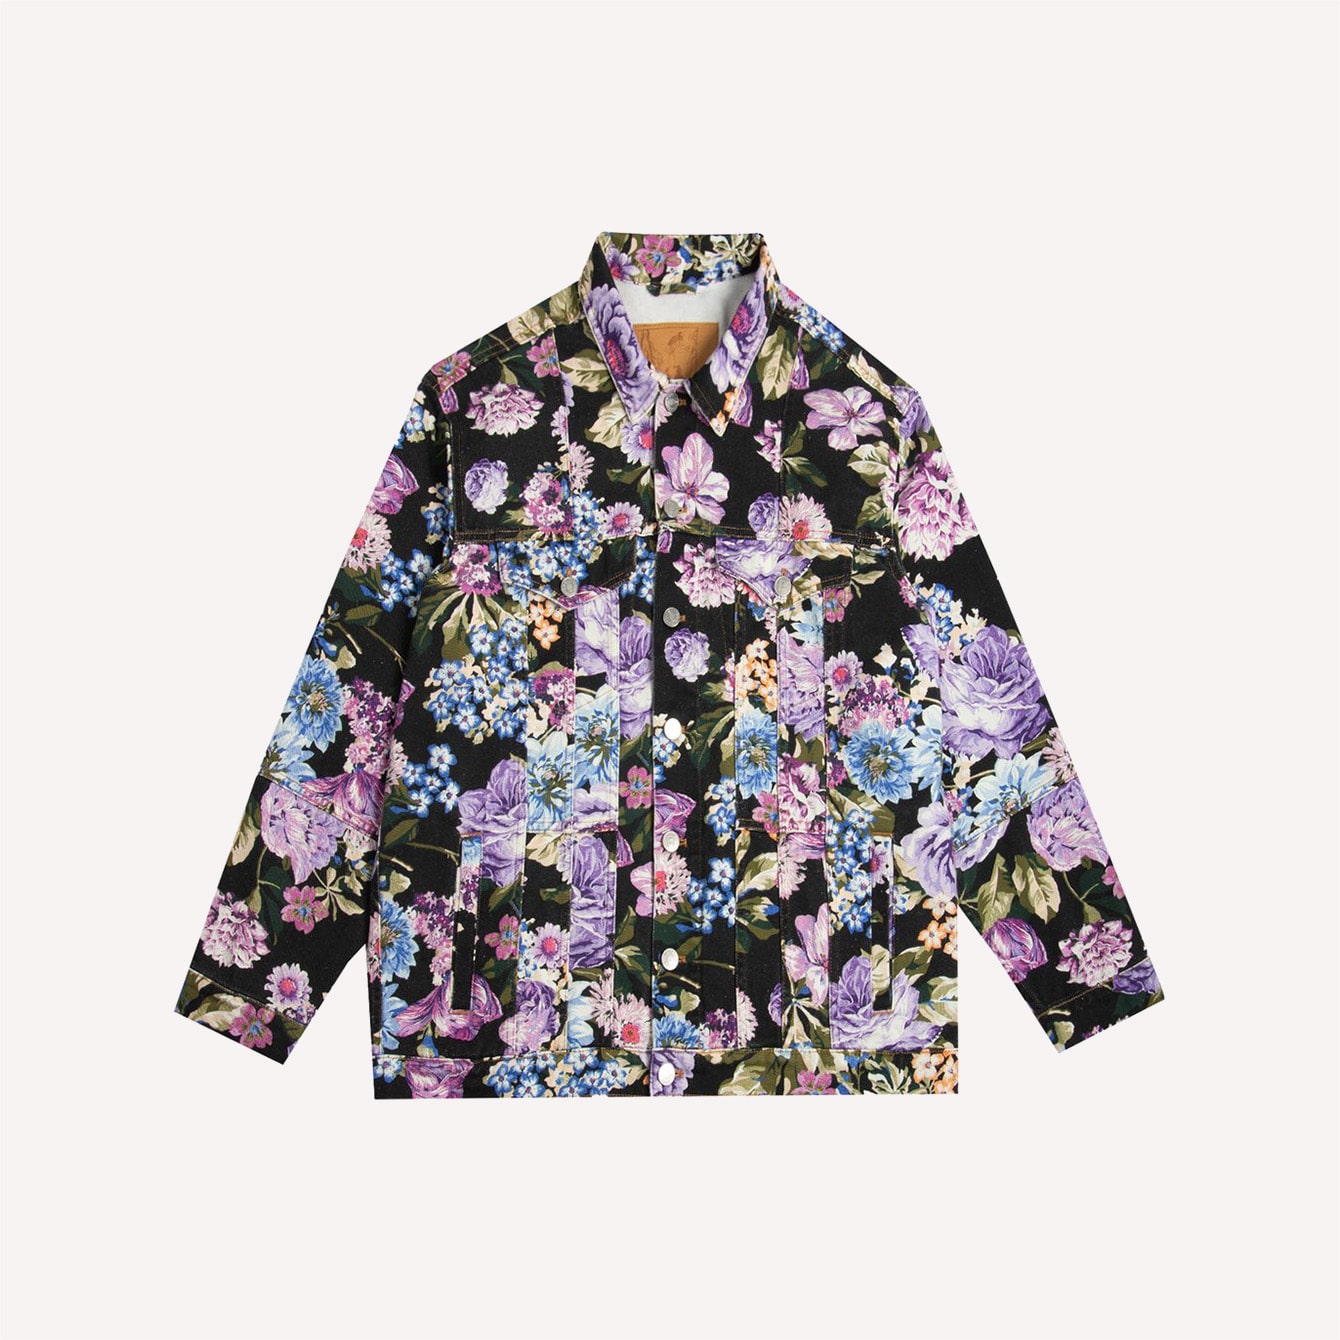 Martine Rose oversized floral print denim jacket